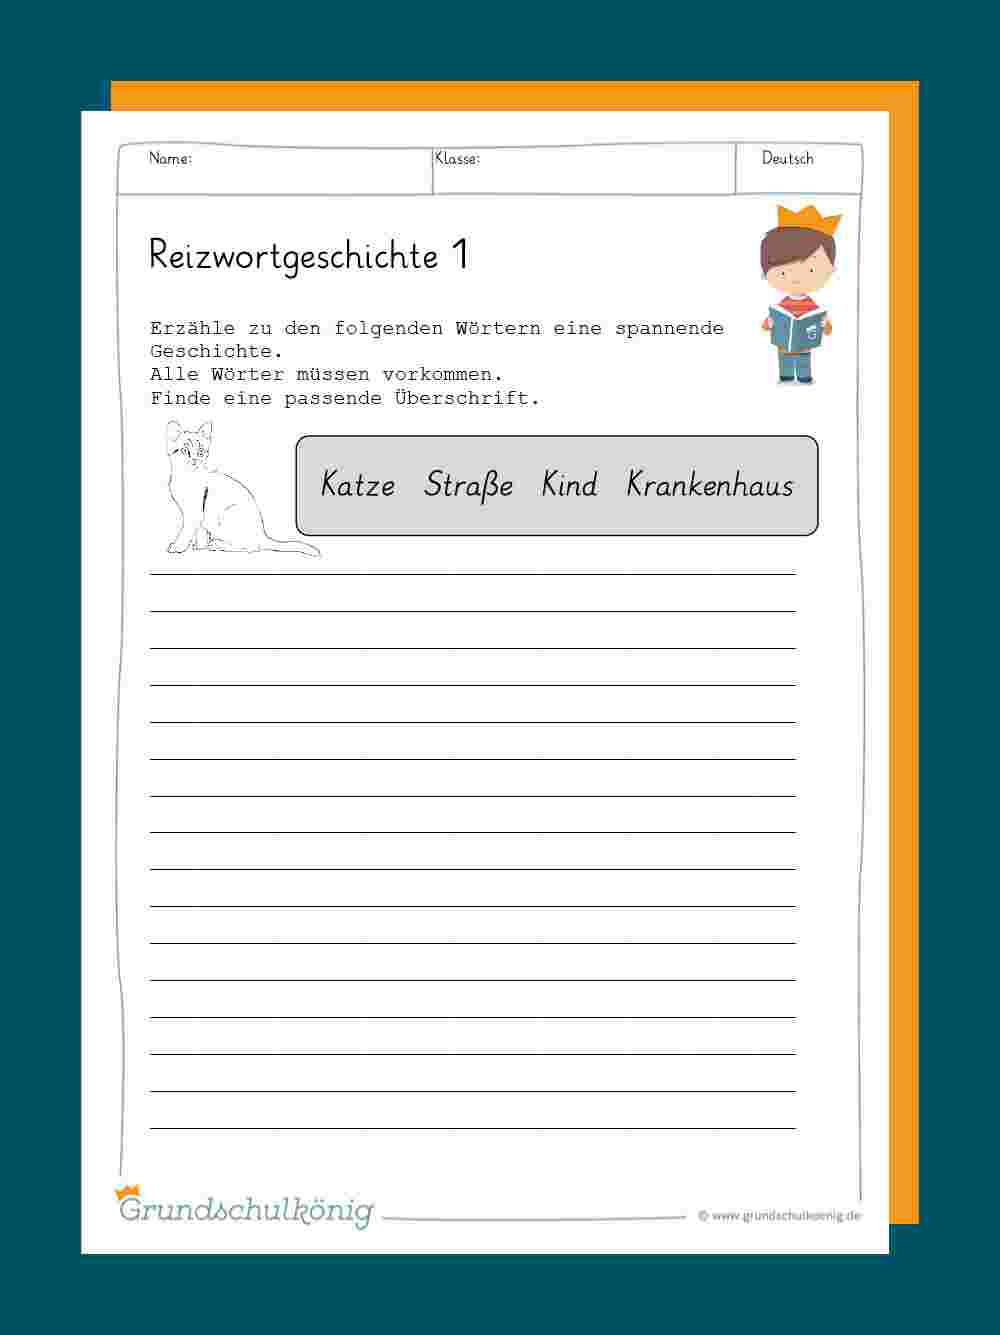 Reizwortgeschichte innen 4 Klasse Deutsch Geschichte Schreiben